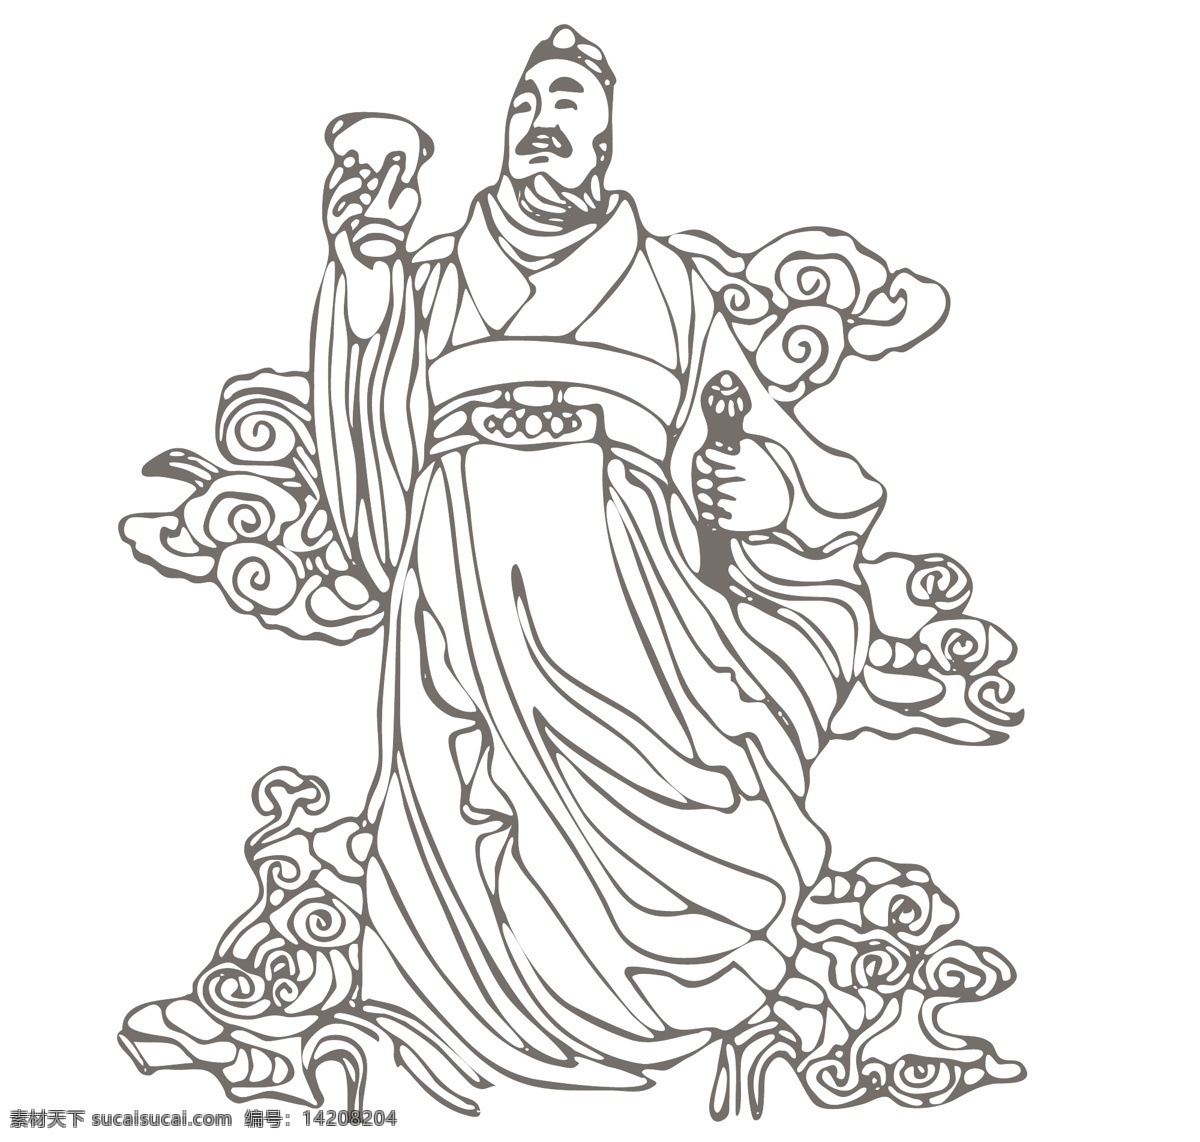 刘邦 线条 手 绘图 汉高祖 汉高祖刘邦 皇帝 帝王 古代名人 古典人物 传统经典 美术人物 精品国画 绘画 文化艺术 人物图库 男性男人